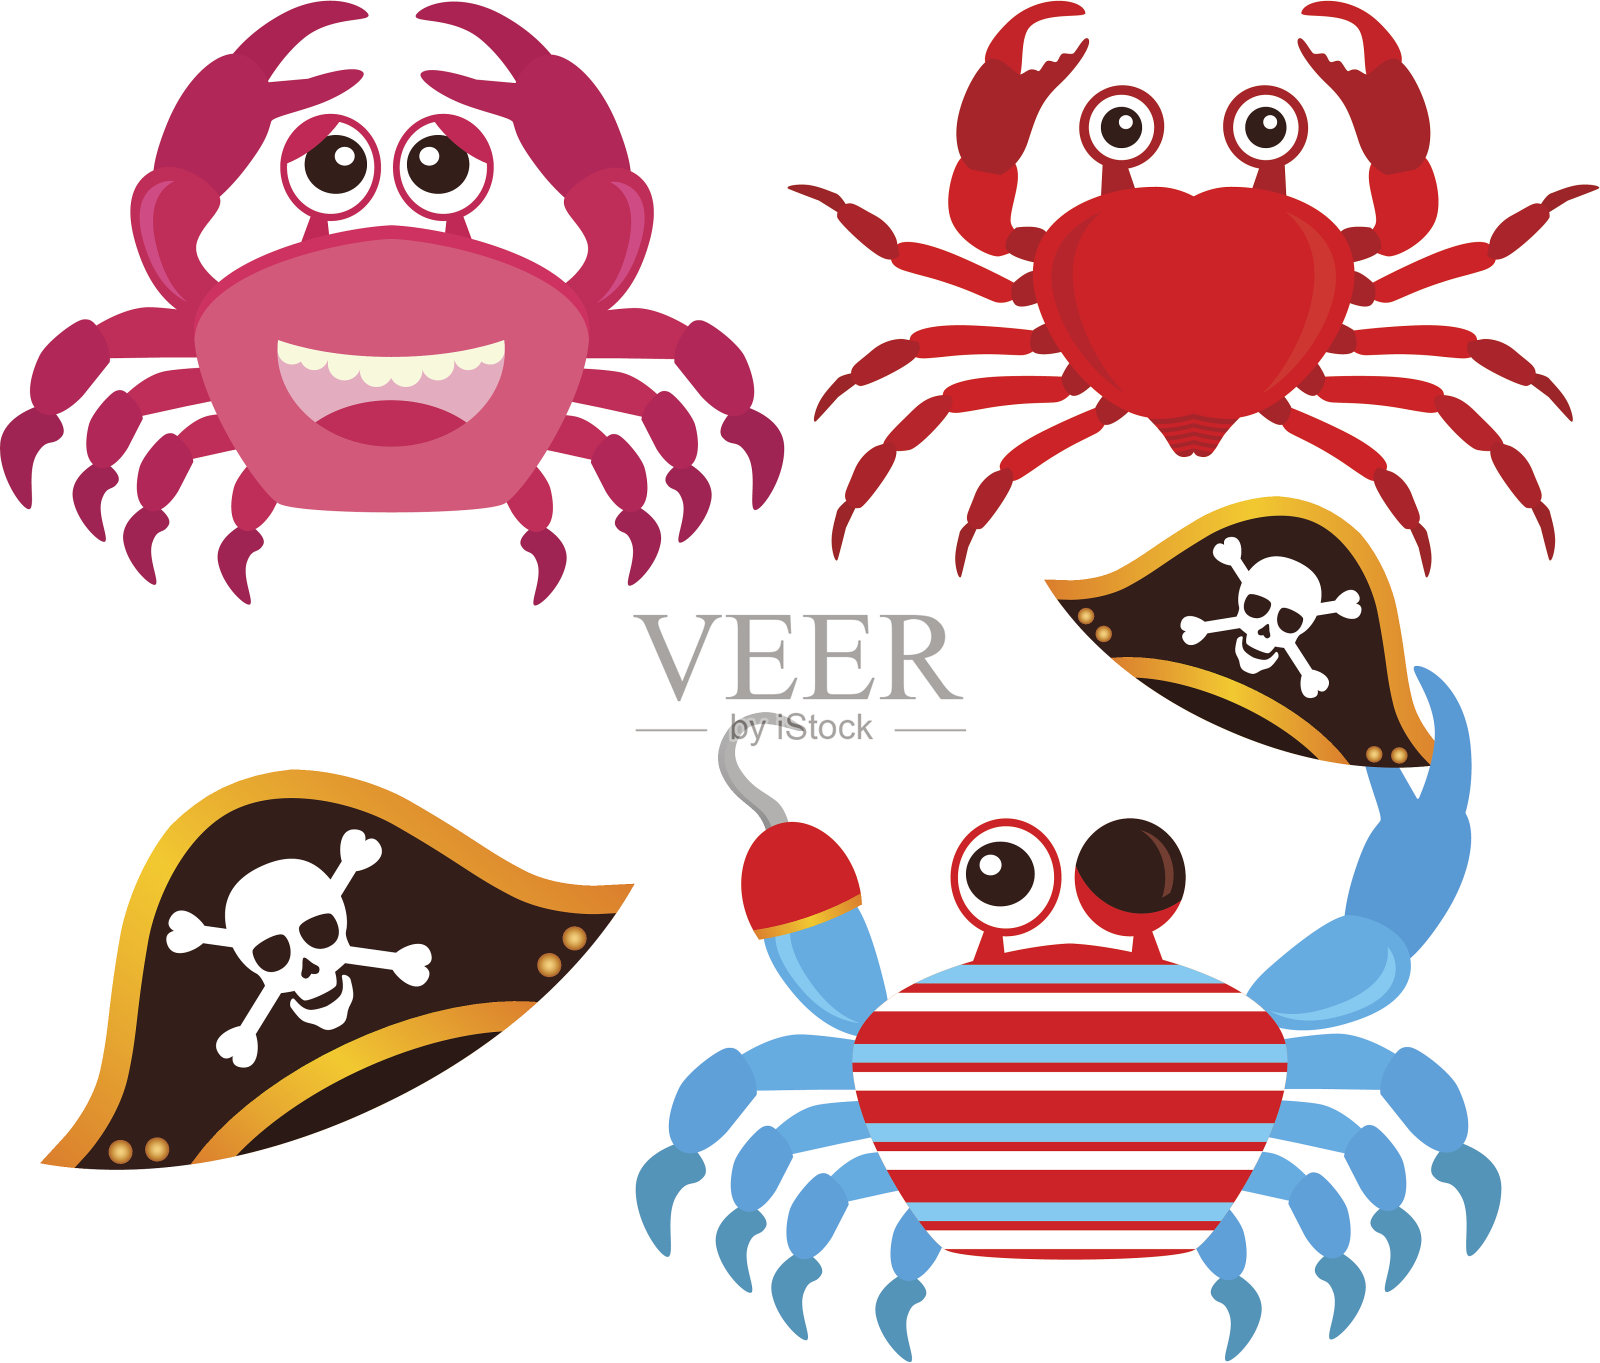 可爱的矢量图标:动物:螃蟹插画图片素材